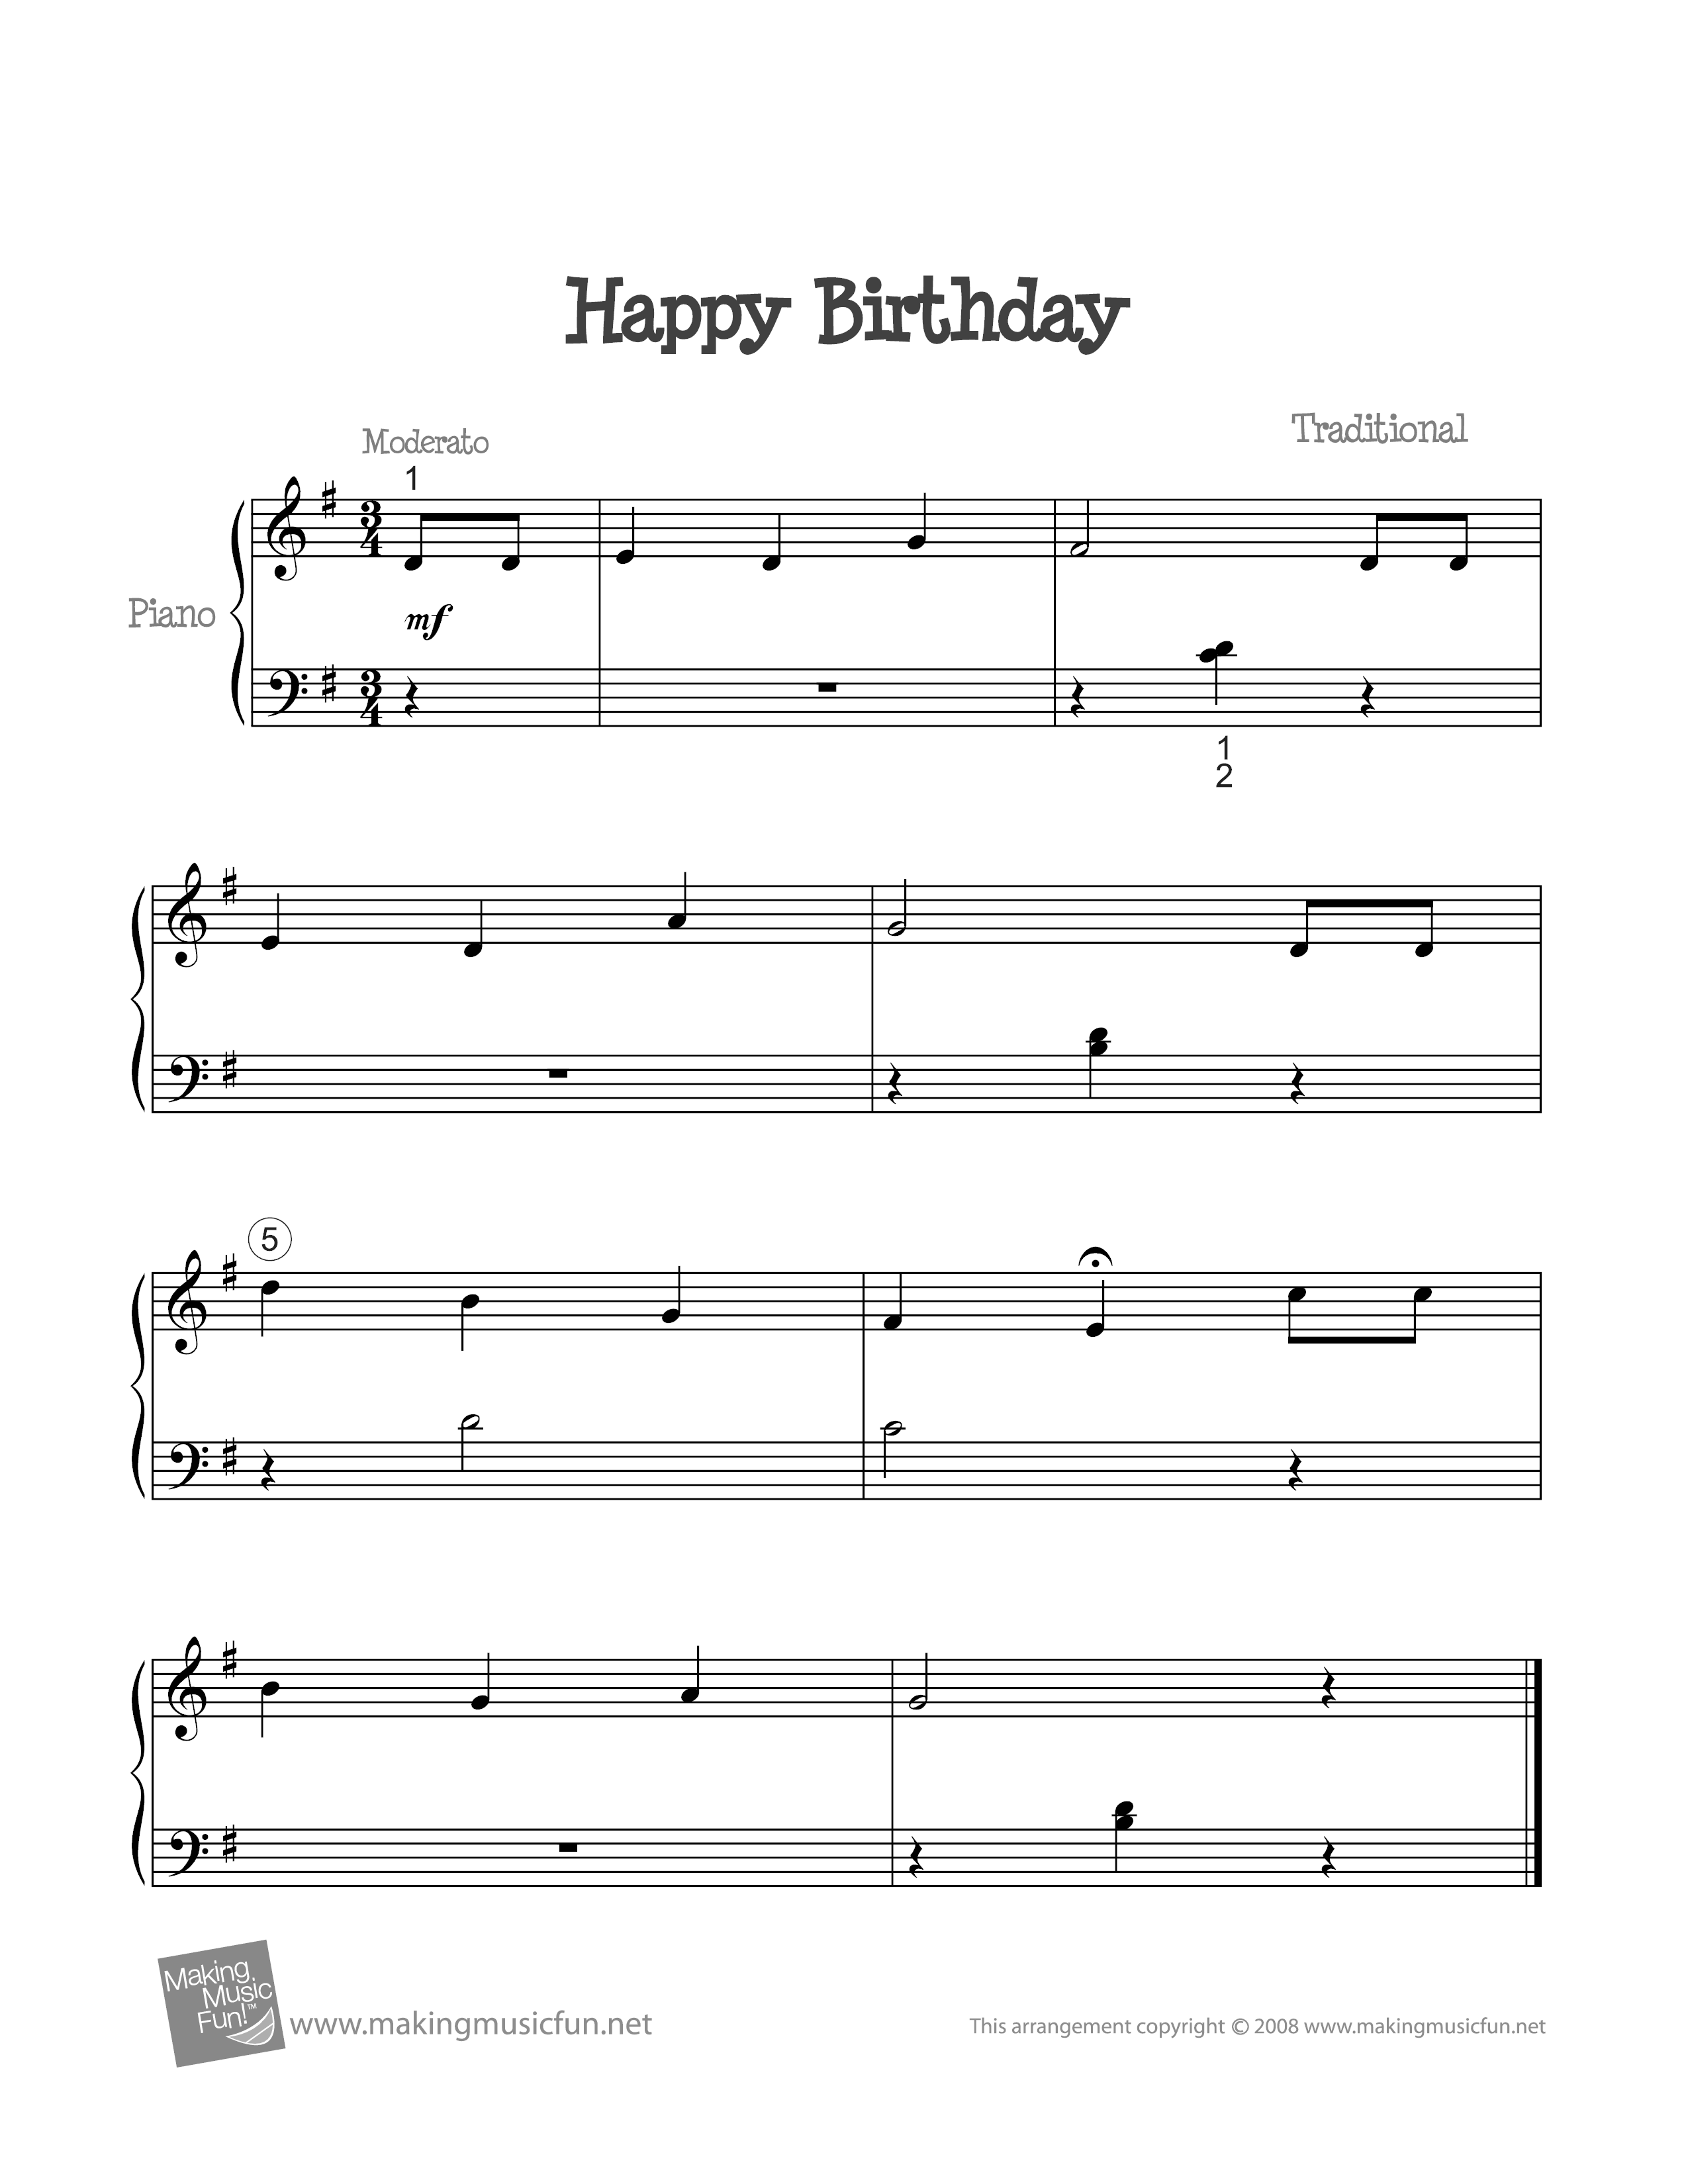 Happy Birthday Piano Sheet Music Pdf : Happy Birthday Variations In G